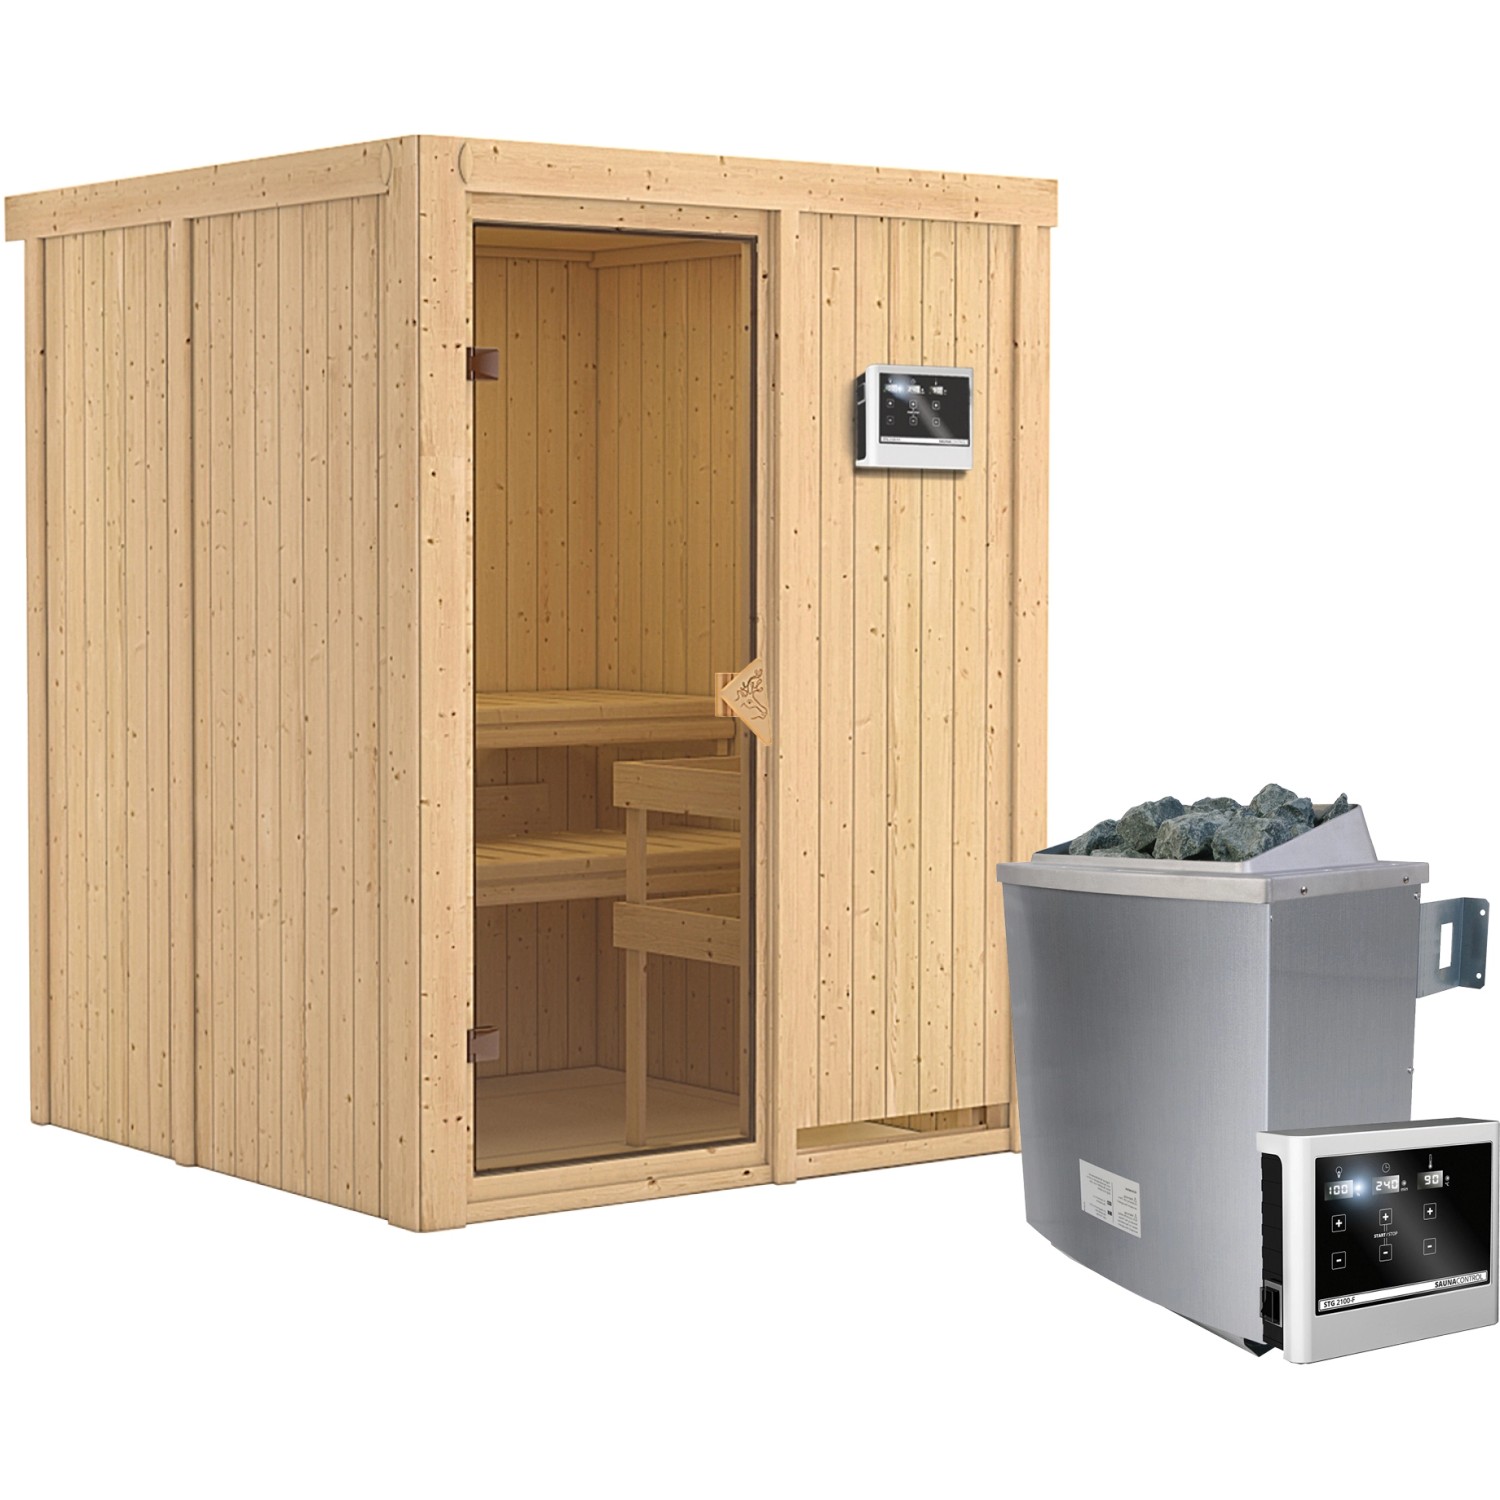 Karibu Sauna-Set Norna inkl. Edelstahl-Ofen 9 kW mit ext. Steuerung günstig online kaufen